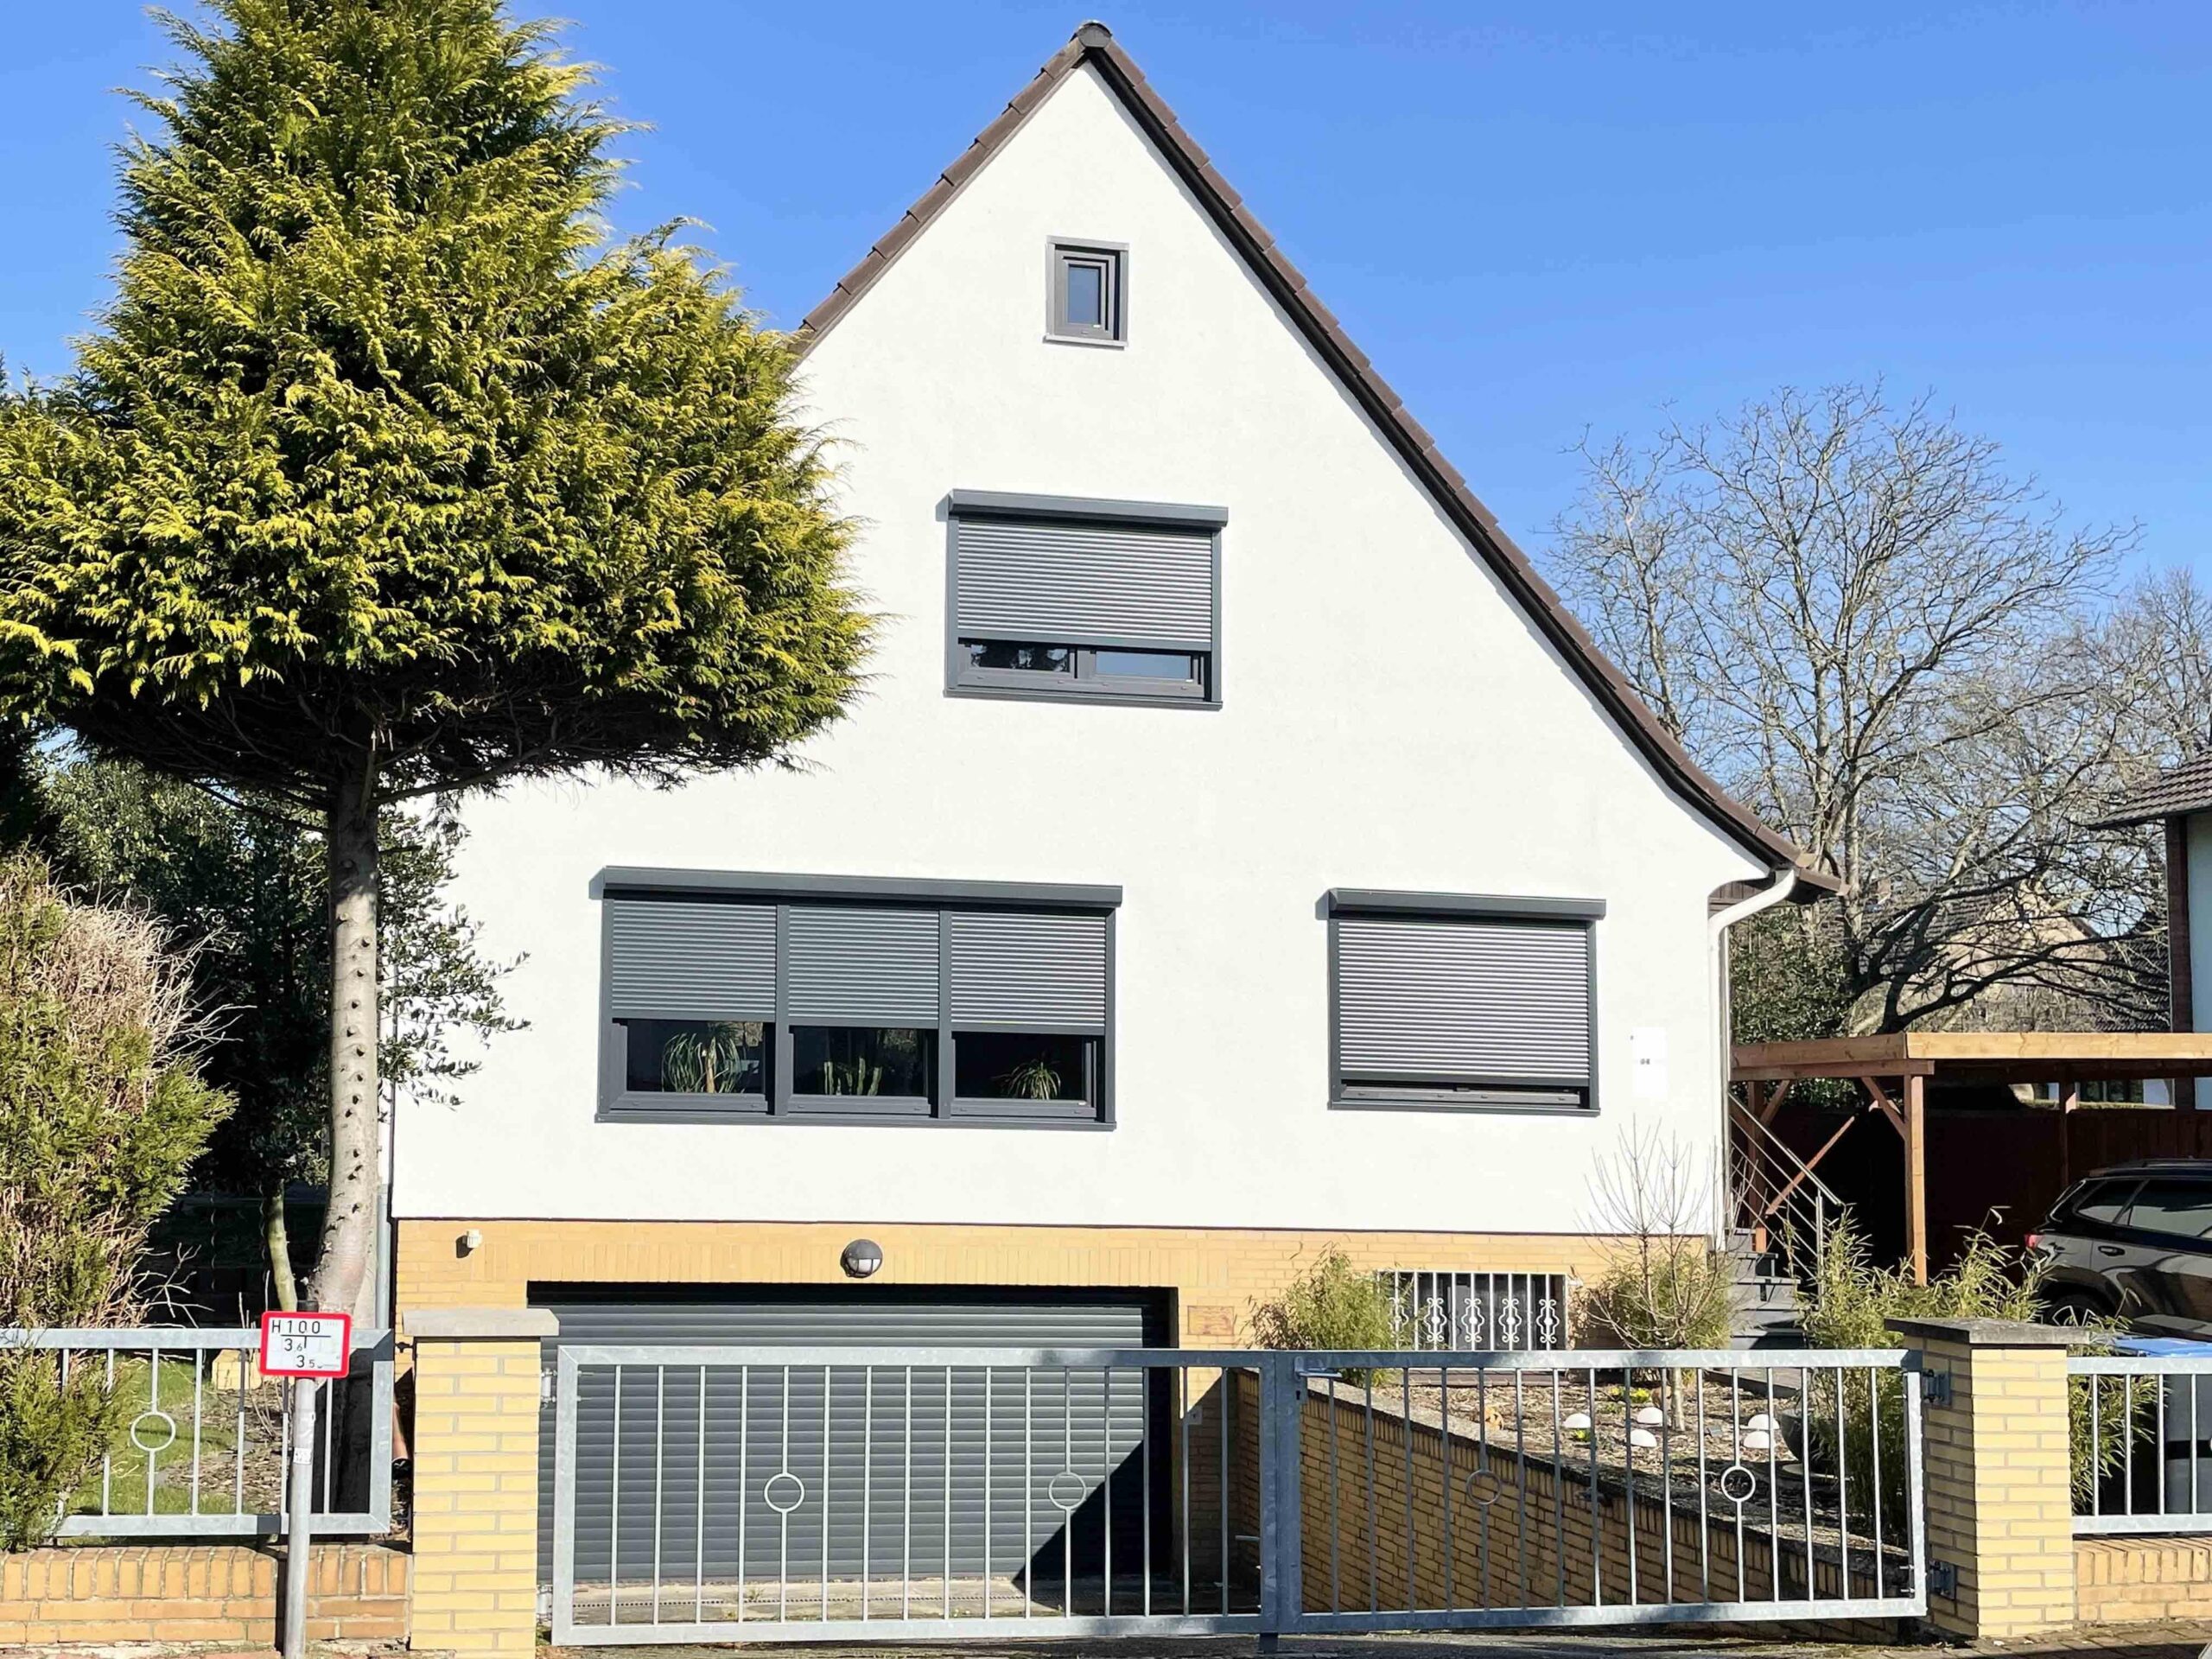 Modernisiertes Einfamilienhaus mit offener Raumgestaltung auf Traumgrundstück in Havelse, 30823 Garbsen, Einfamilienhaus